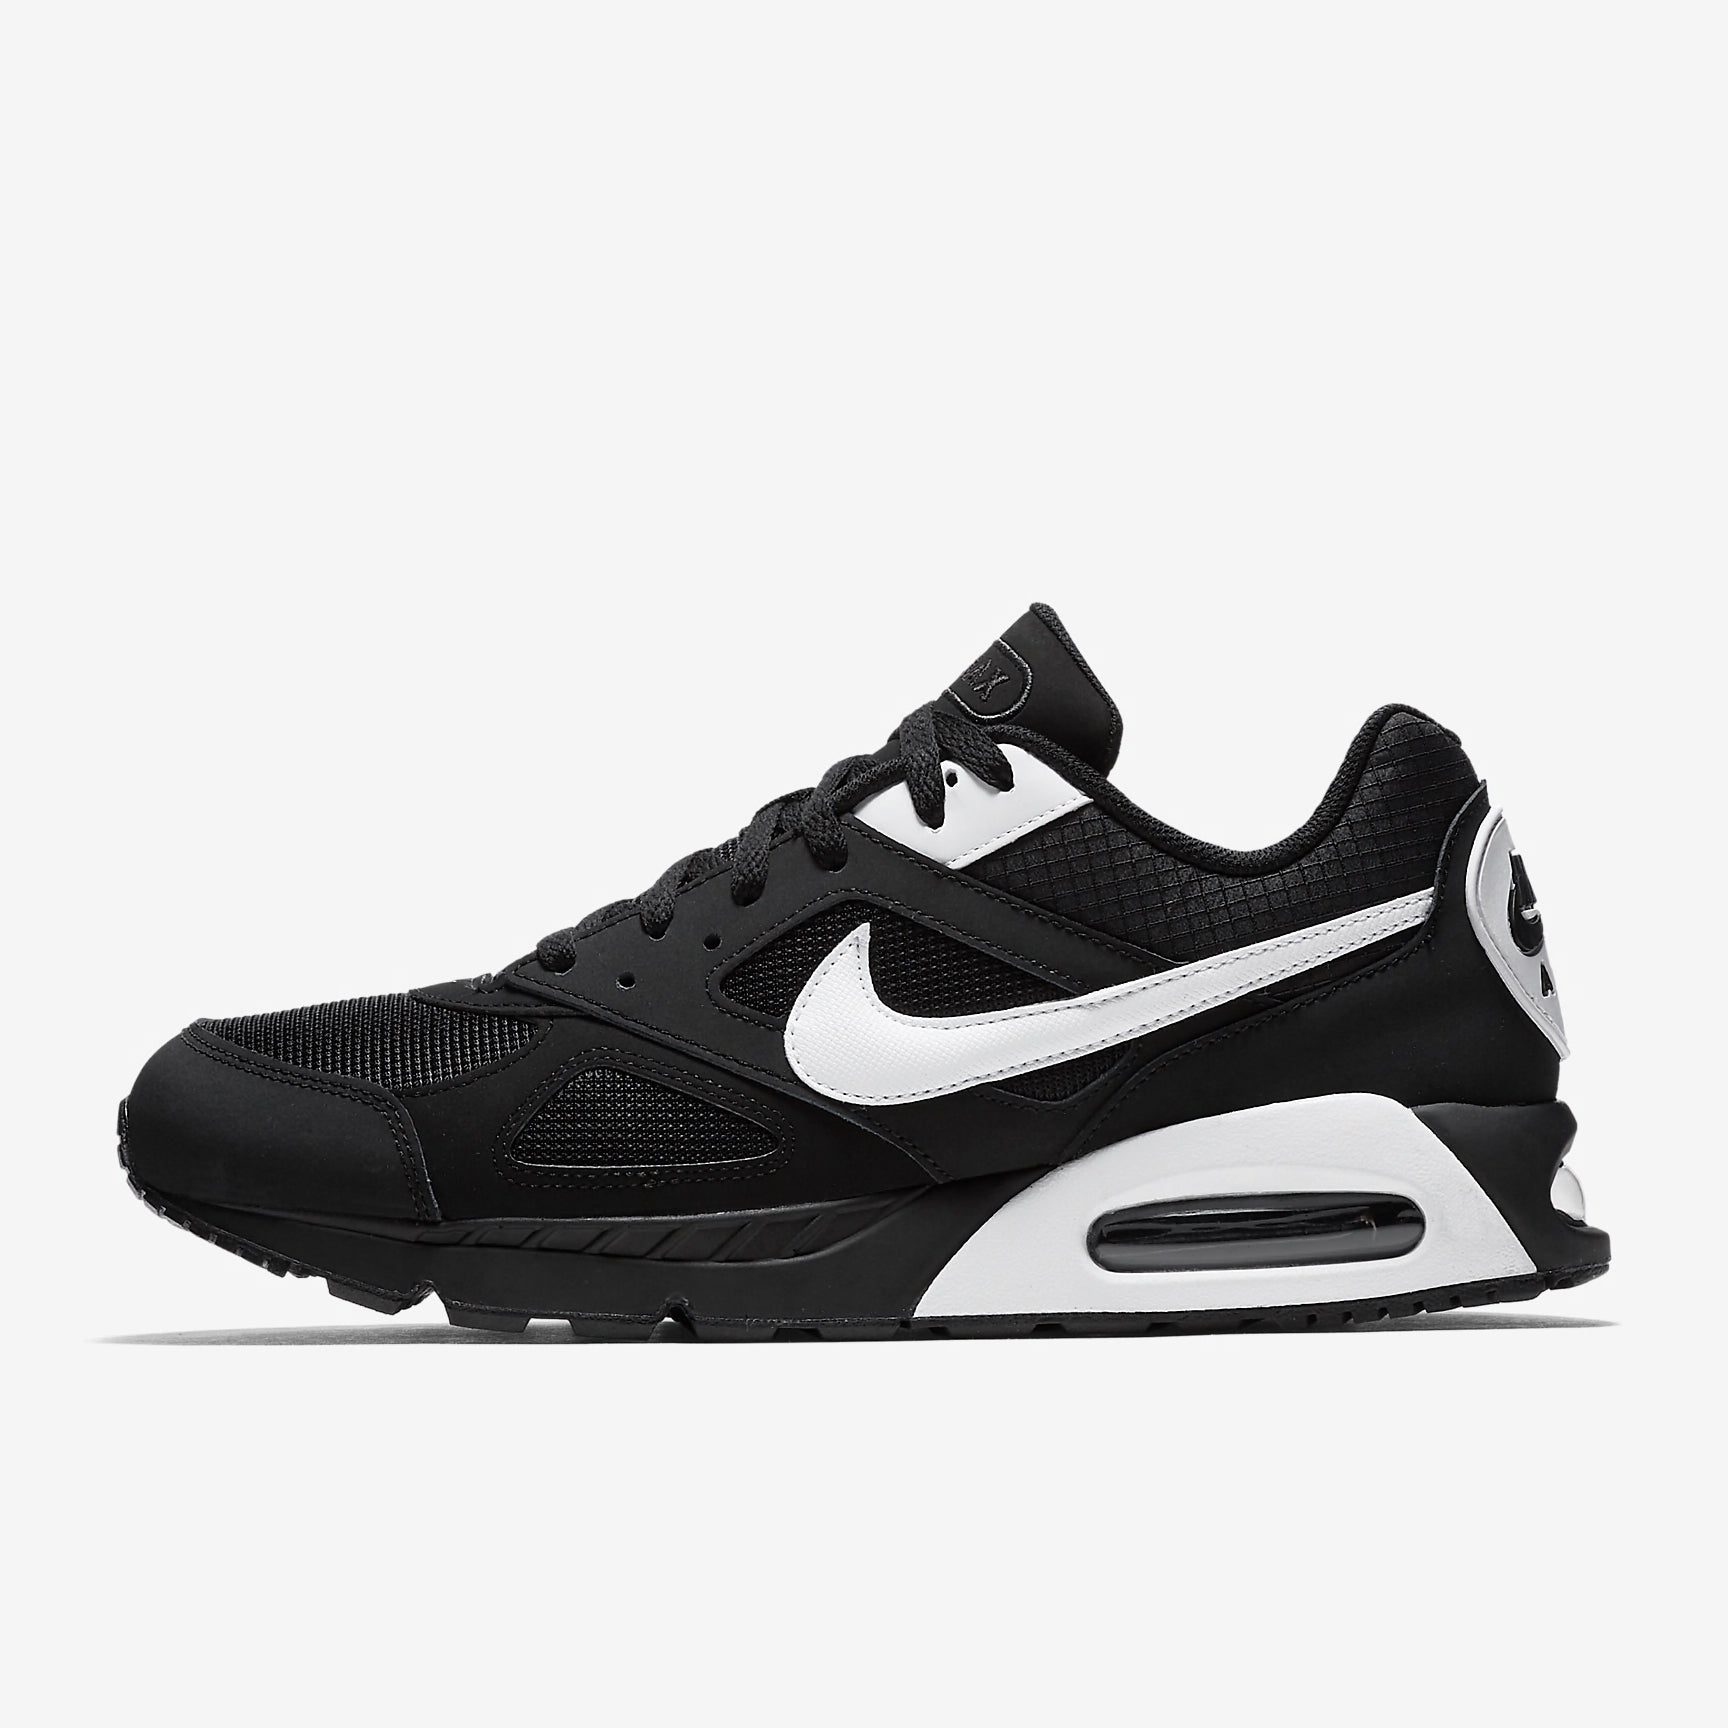 Nike Air Max IVO Shoes in Black \u0026 White 